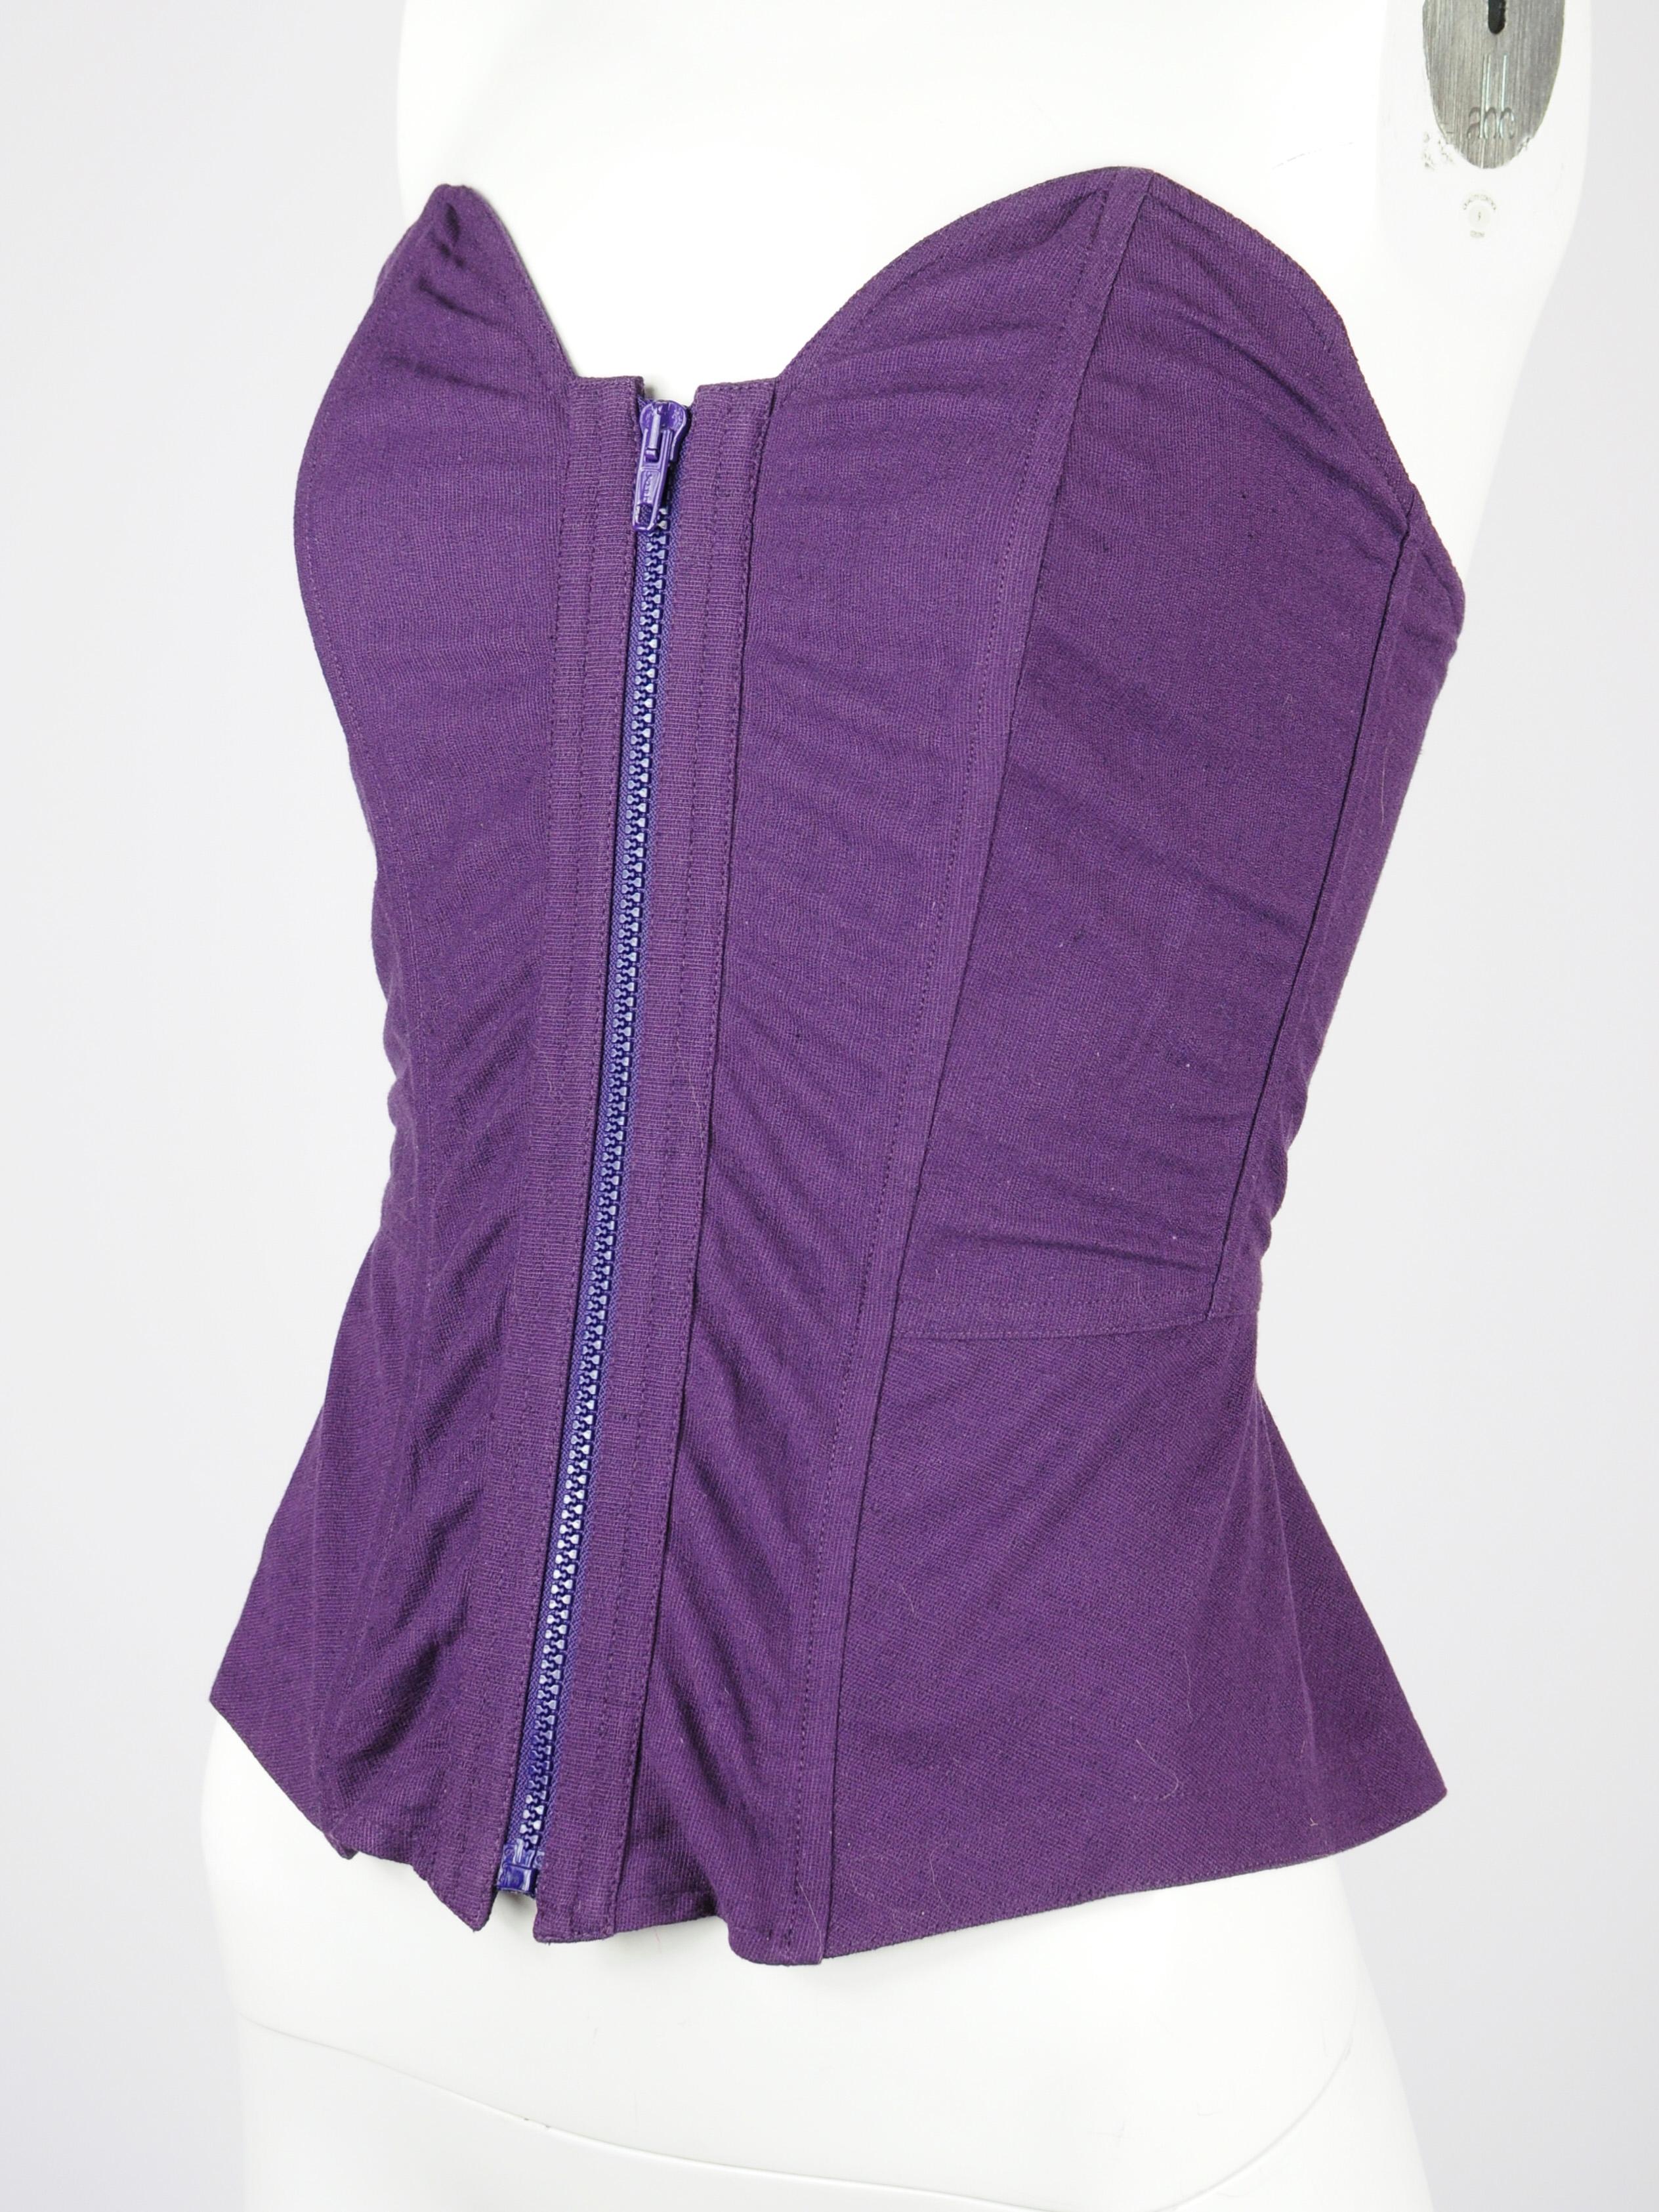 Top corset La Perla, lin violet et coton mélangés  depuis le début des années 1990. Ce corset La Perla est en stock, ce qui signifie qu'il est neuf avec les étiquettes et qu'il n'a jamais été porté. Elle est renforcée par un renfort en os. La